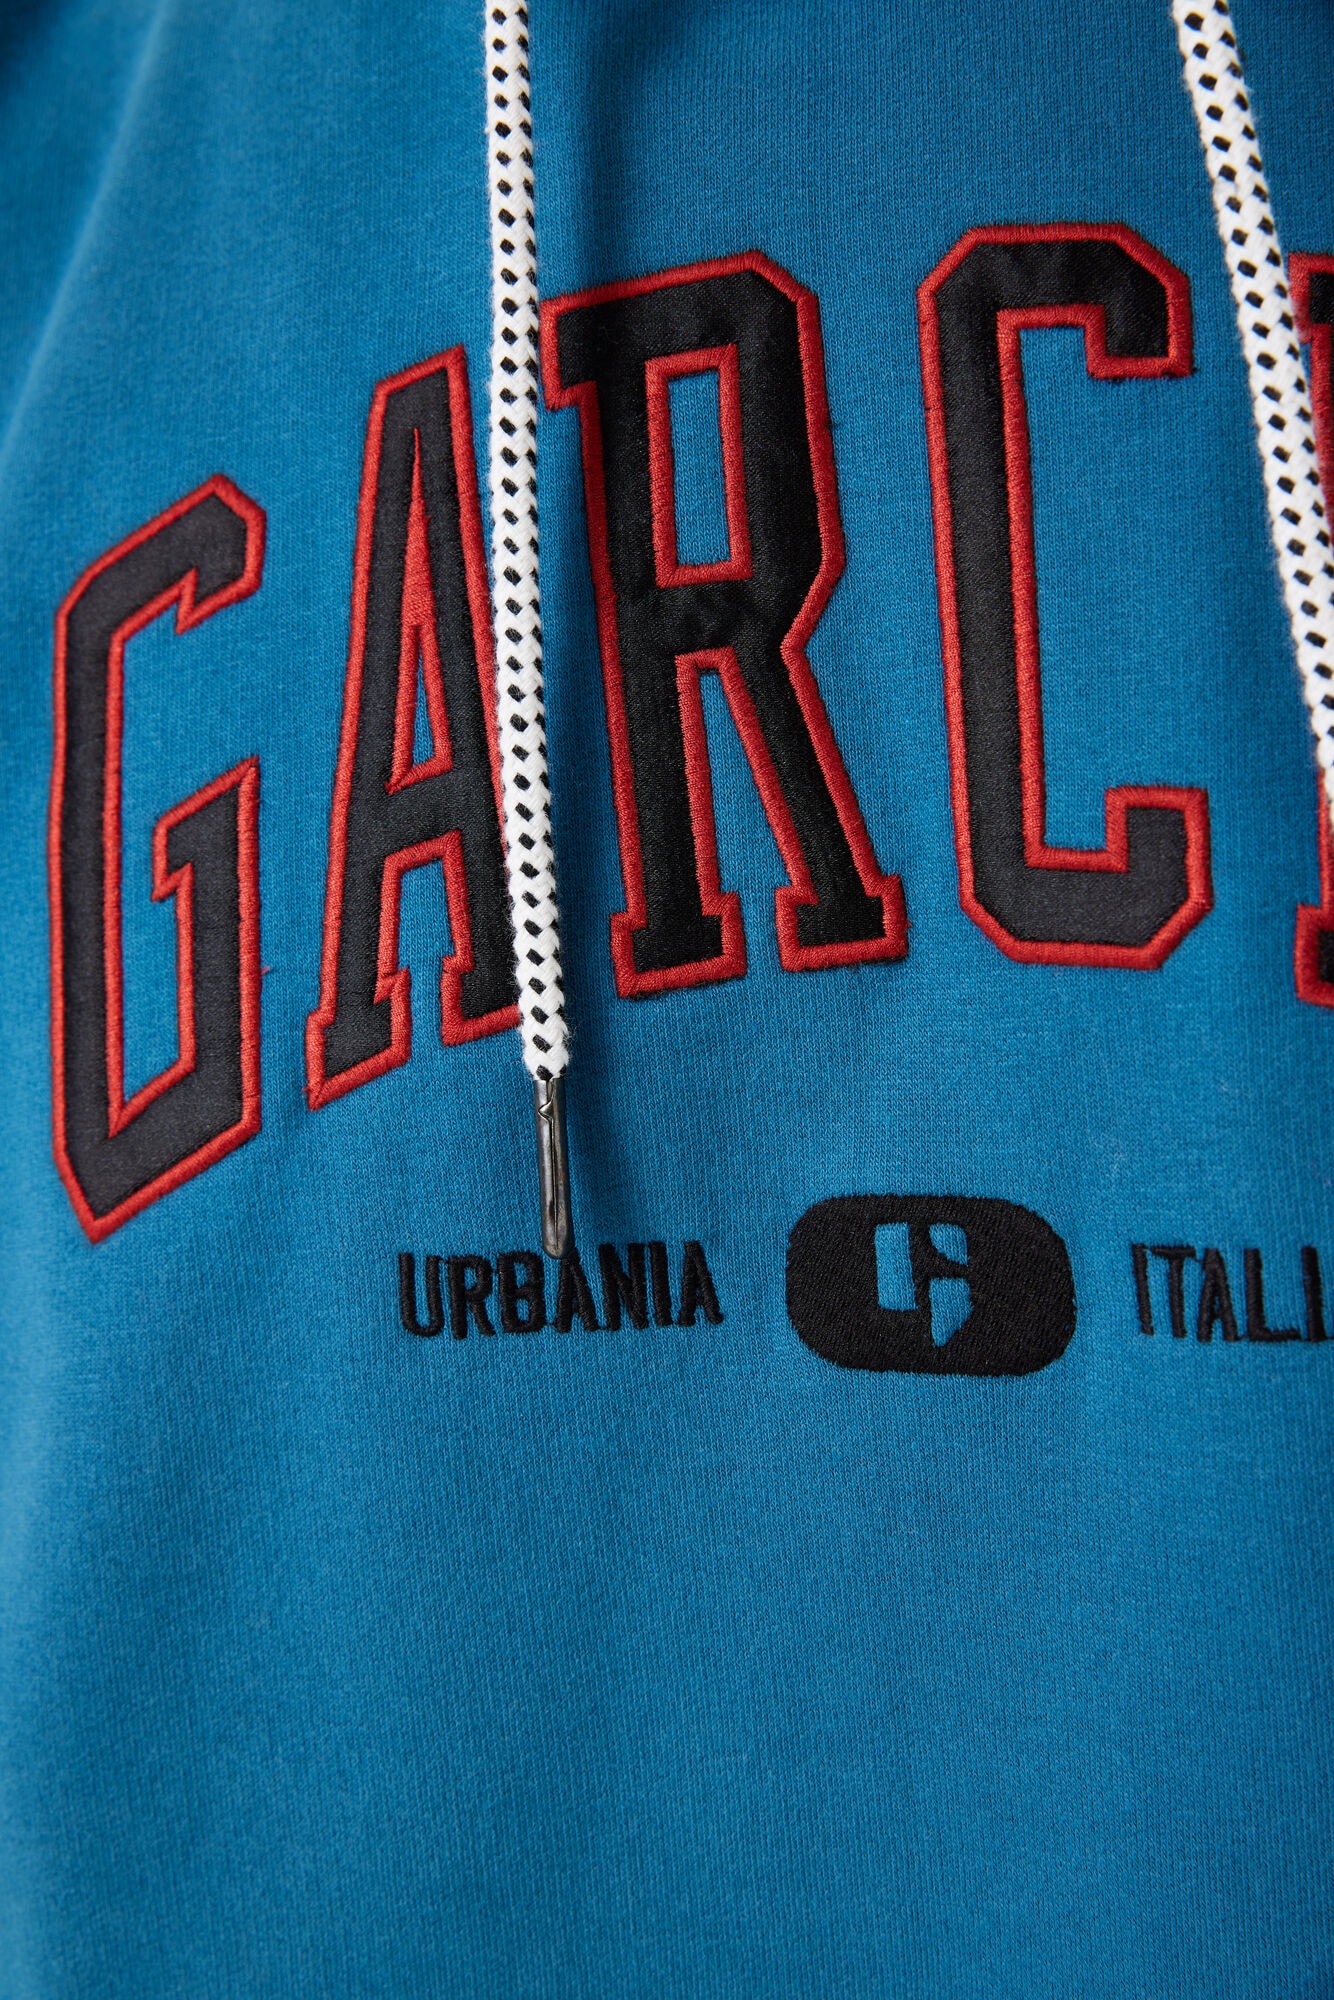 Garcia Hoodie »Sweatshirt GARCIA«